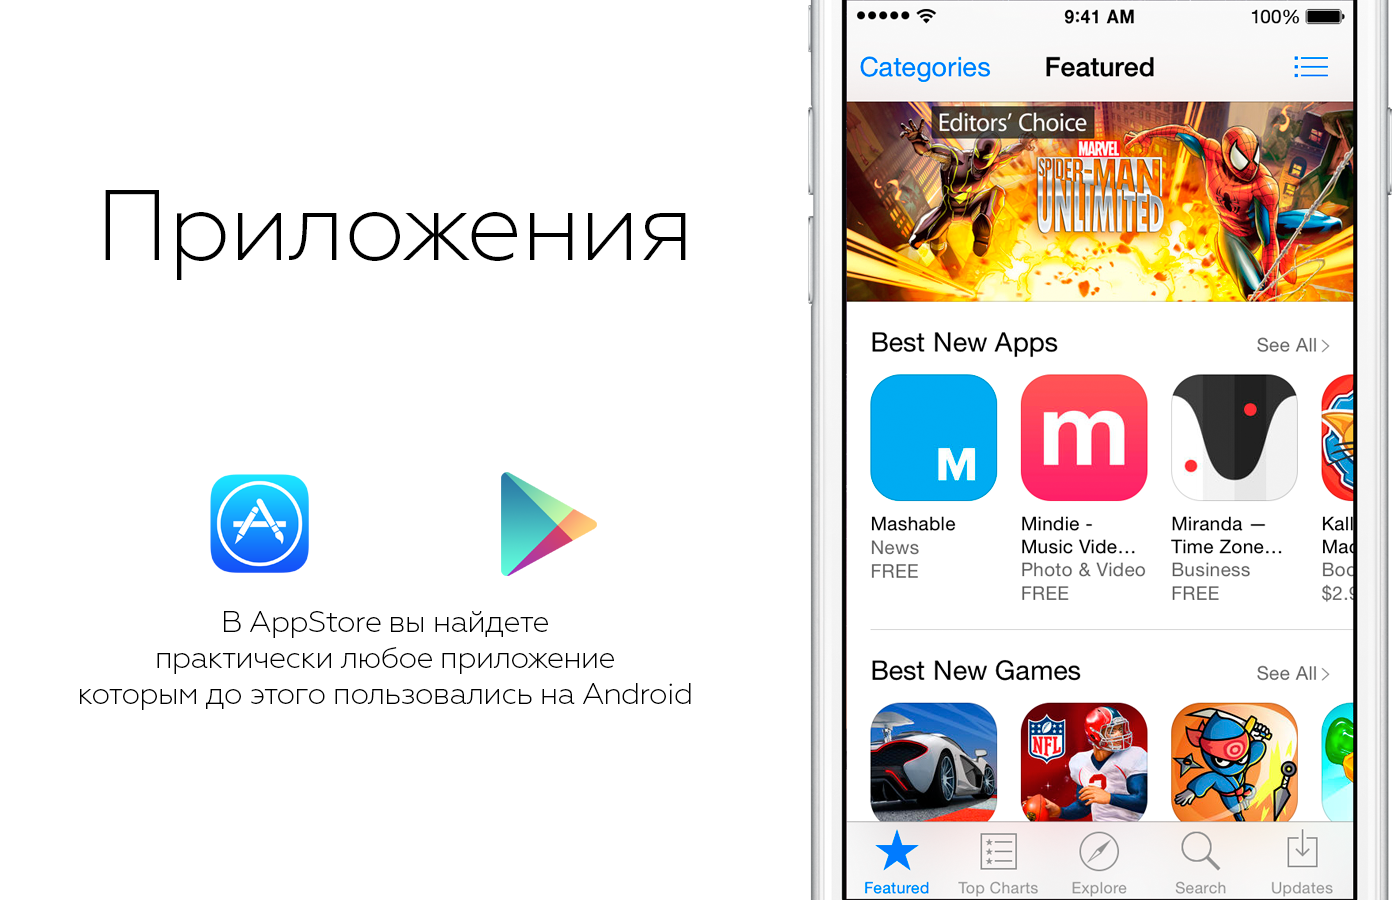 Переход с Android на IOS. Best new apps